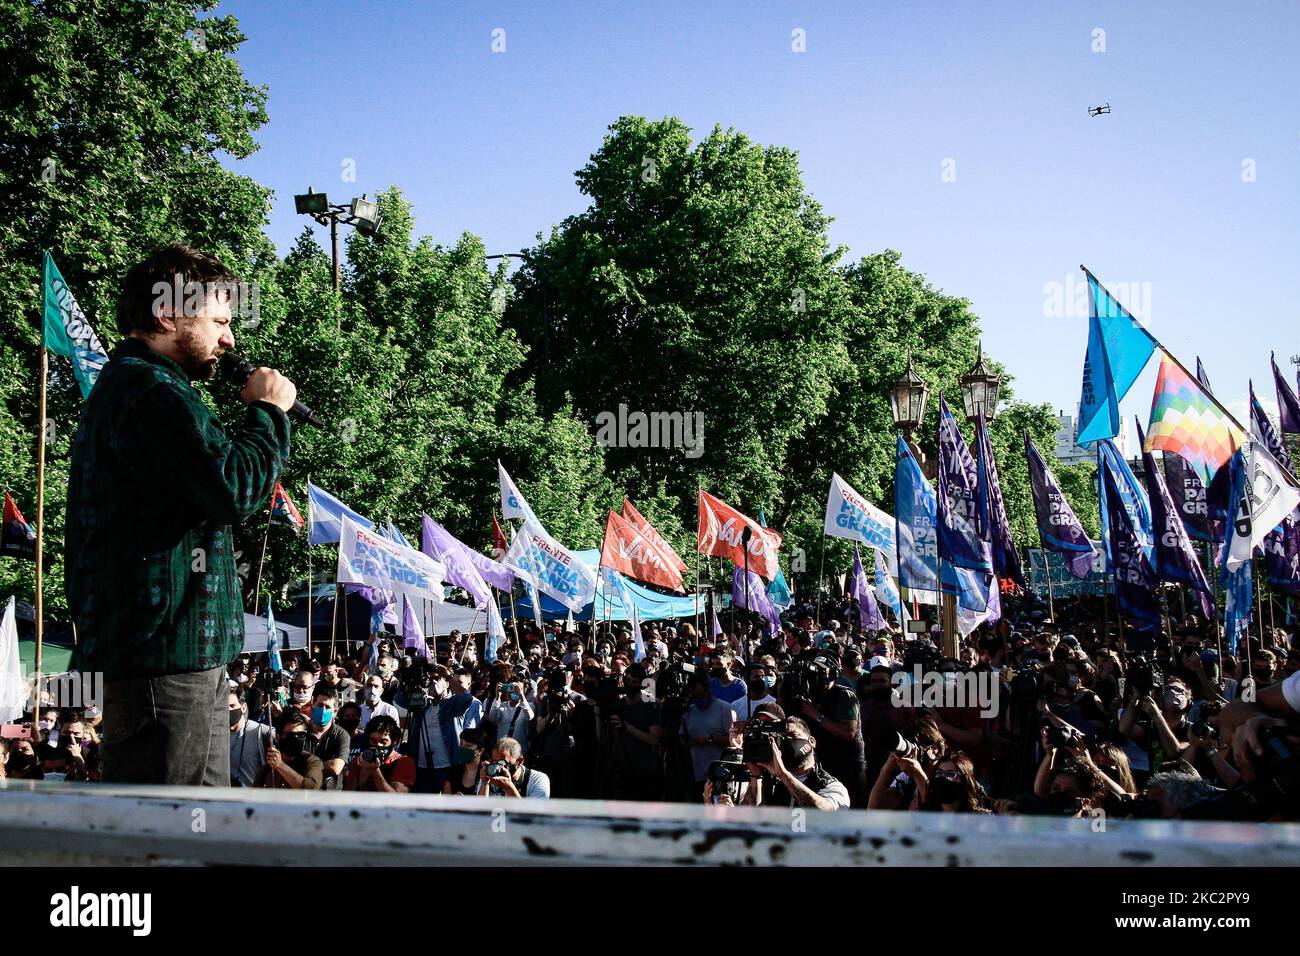 Le chef social argentin Juan Grabois parle lors d'un rassemblement de campagne pour soutenir le projet agroécologique social et rural (projet Artigas) à Buenos Aires, en Argentine, sur 27 octobre 2020. (Photo par Federico Rotter/NurPhoto) Banque D'Images